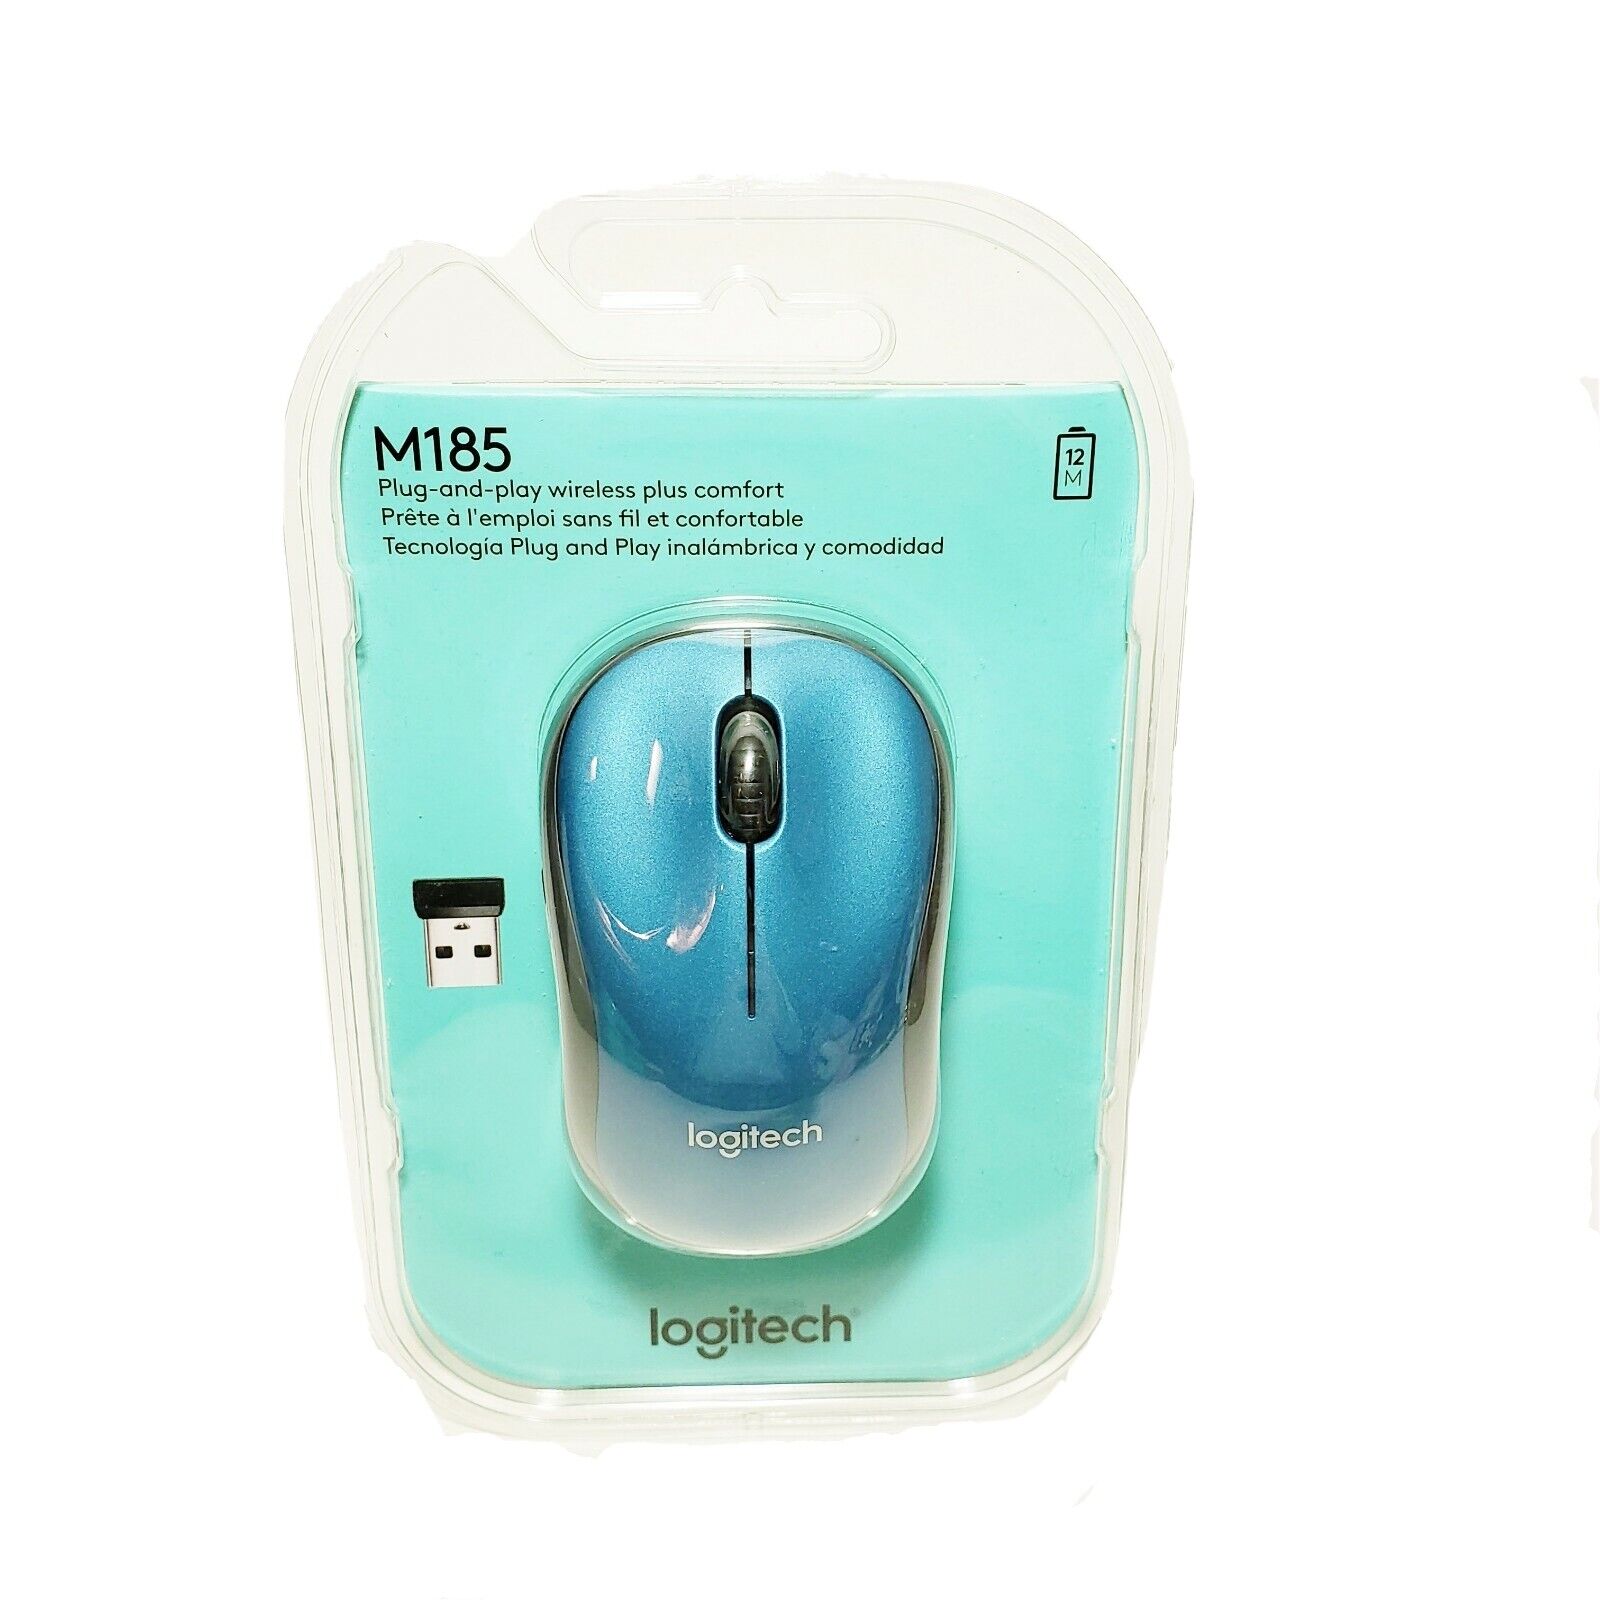 jeugd privacy Ambassade Logitech Wireless Computer Mouse M185 Blue & Black New Sealed 97855122612 |  eBay